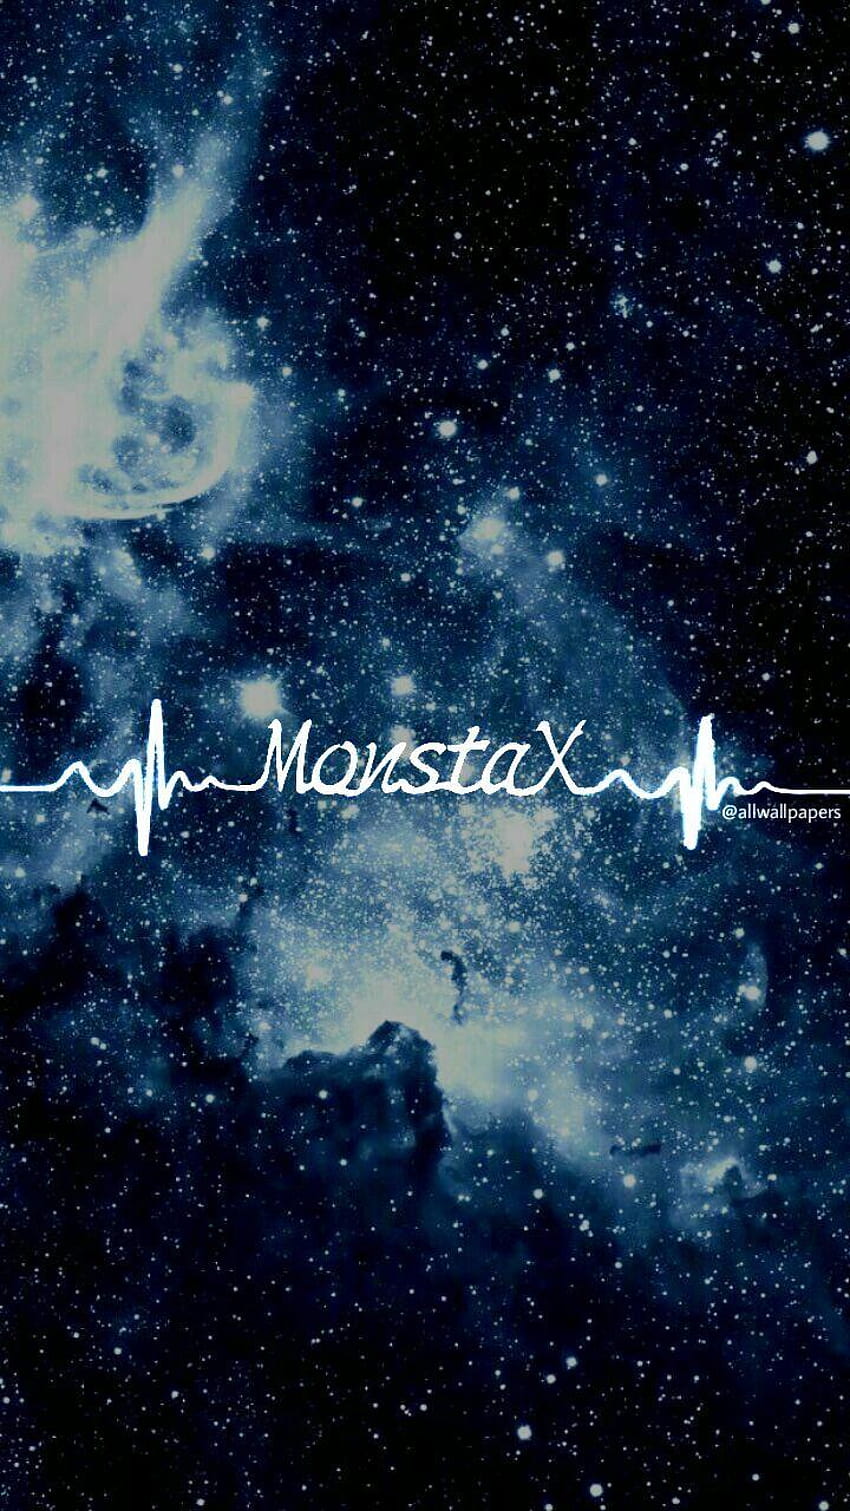 Monsta x được biết đến là một trong những nhóm nhạc nam hot nhất hiện nay. Hãy trang trí màn hình điện thoại của bạn với những hình ảnh đầy sức sống của các thành viên trong nhóm nhạc này để truyền tải tinh thần vui tươi và năng động.